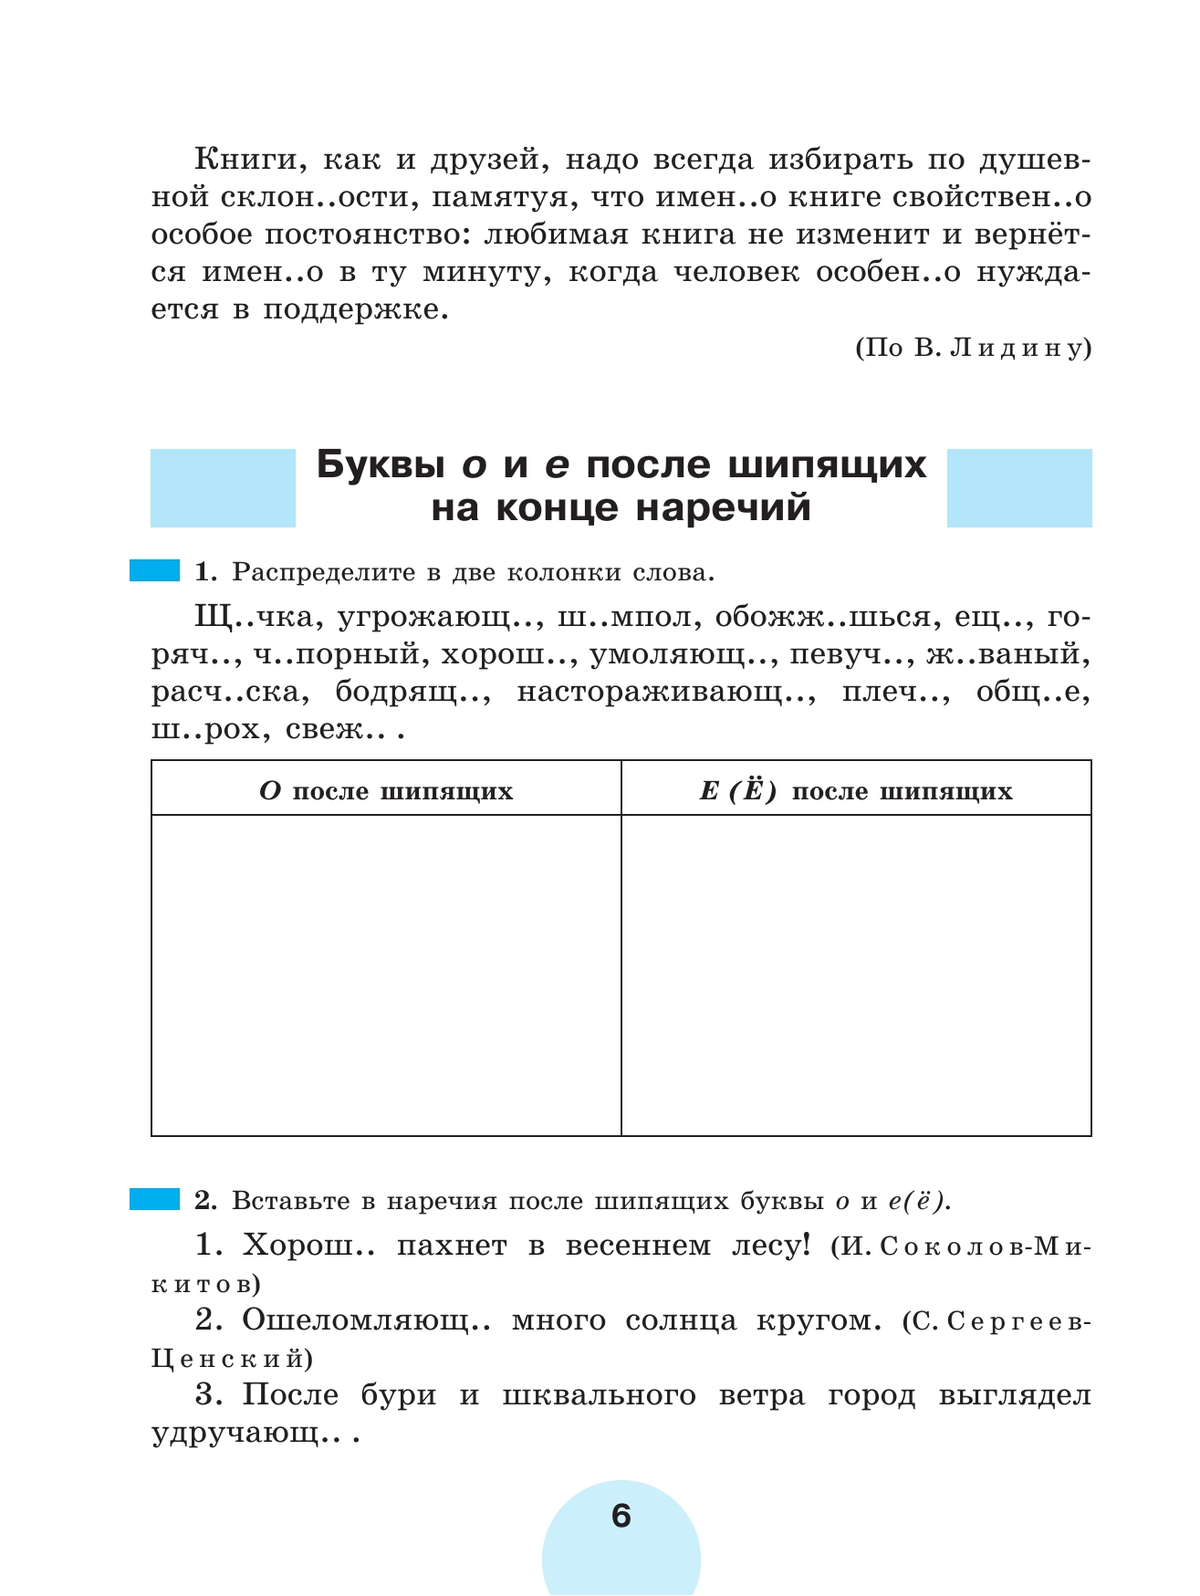 Русский язык. Рабочая тетрадь. 7 класс. В 2 ч. Часть 2 3